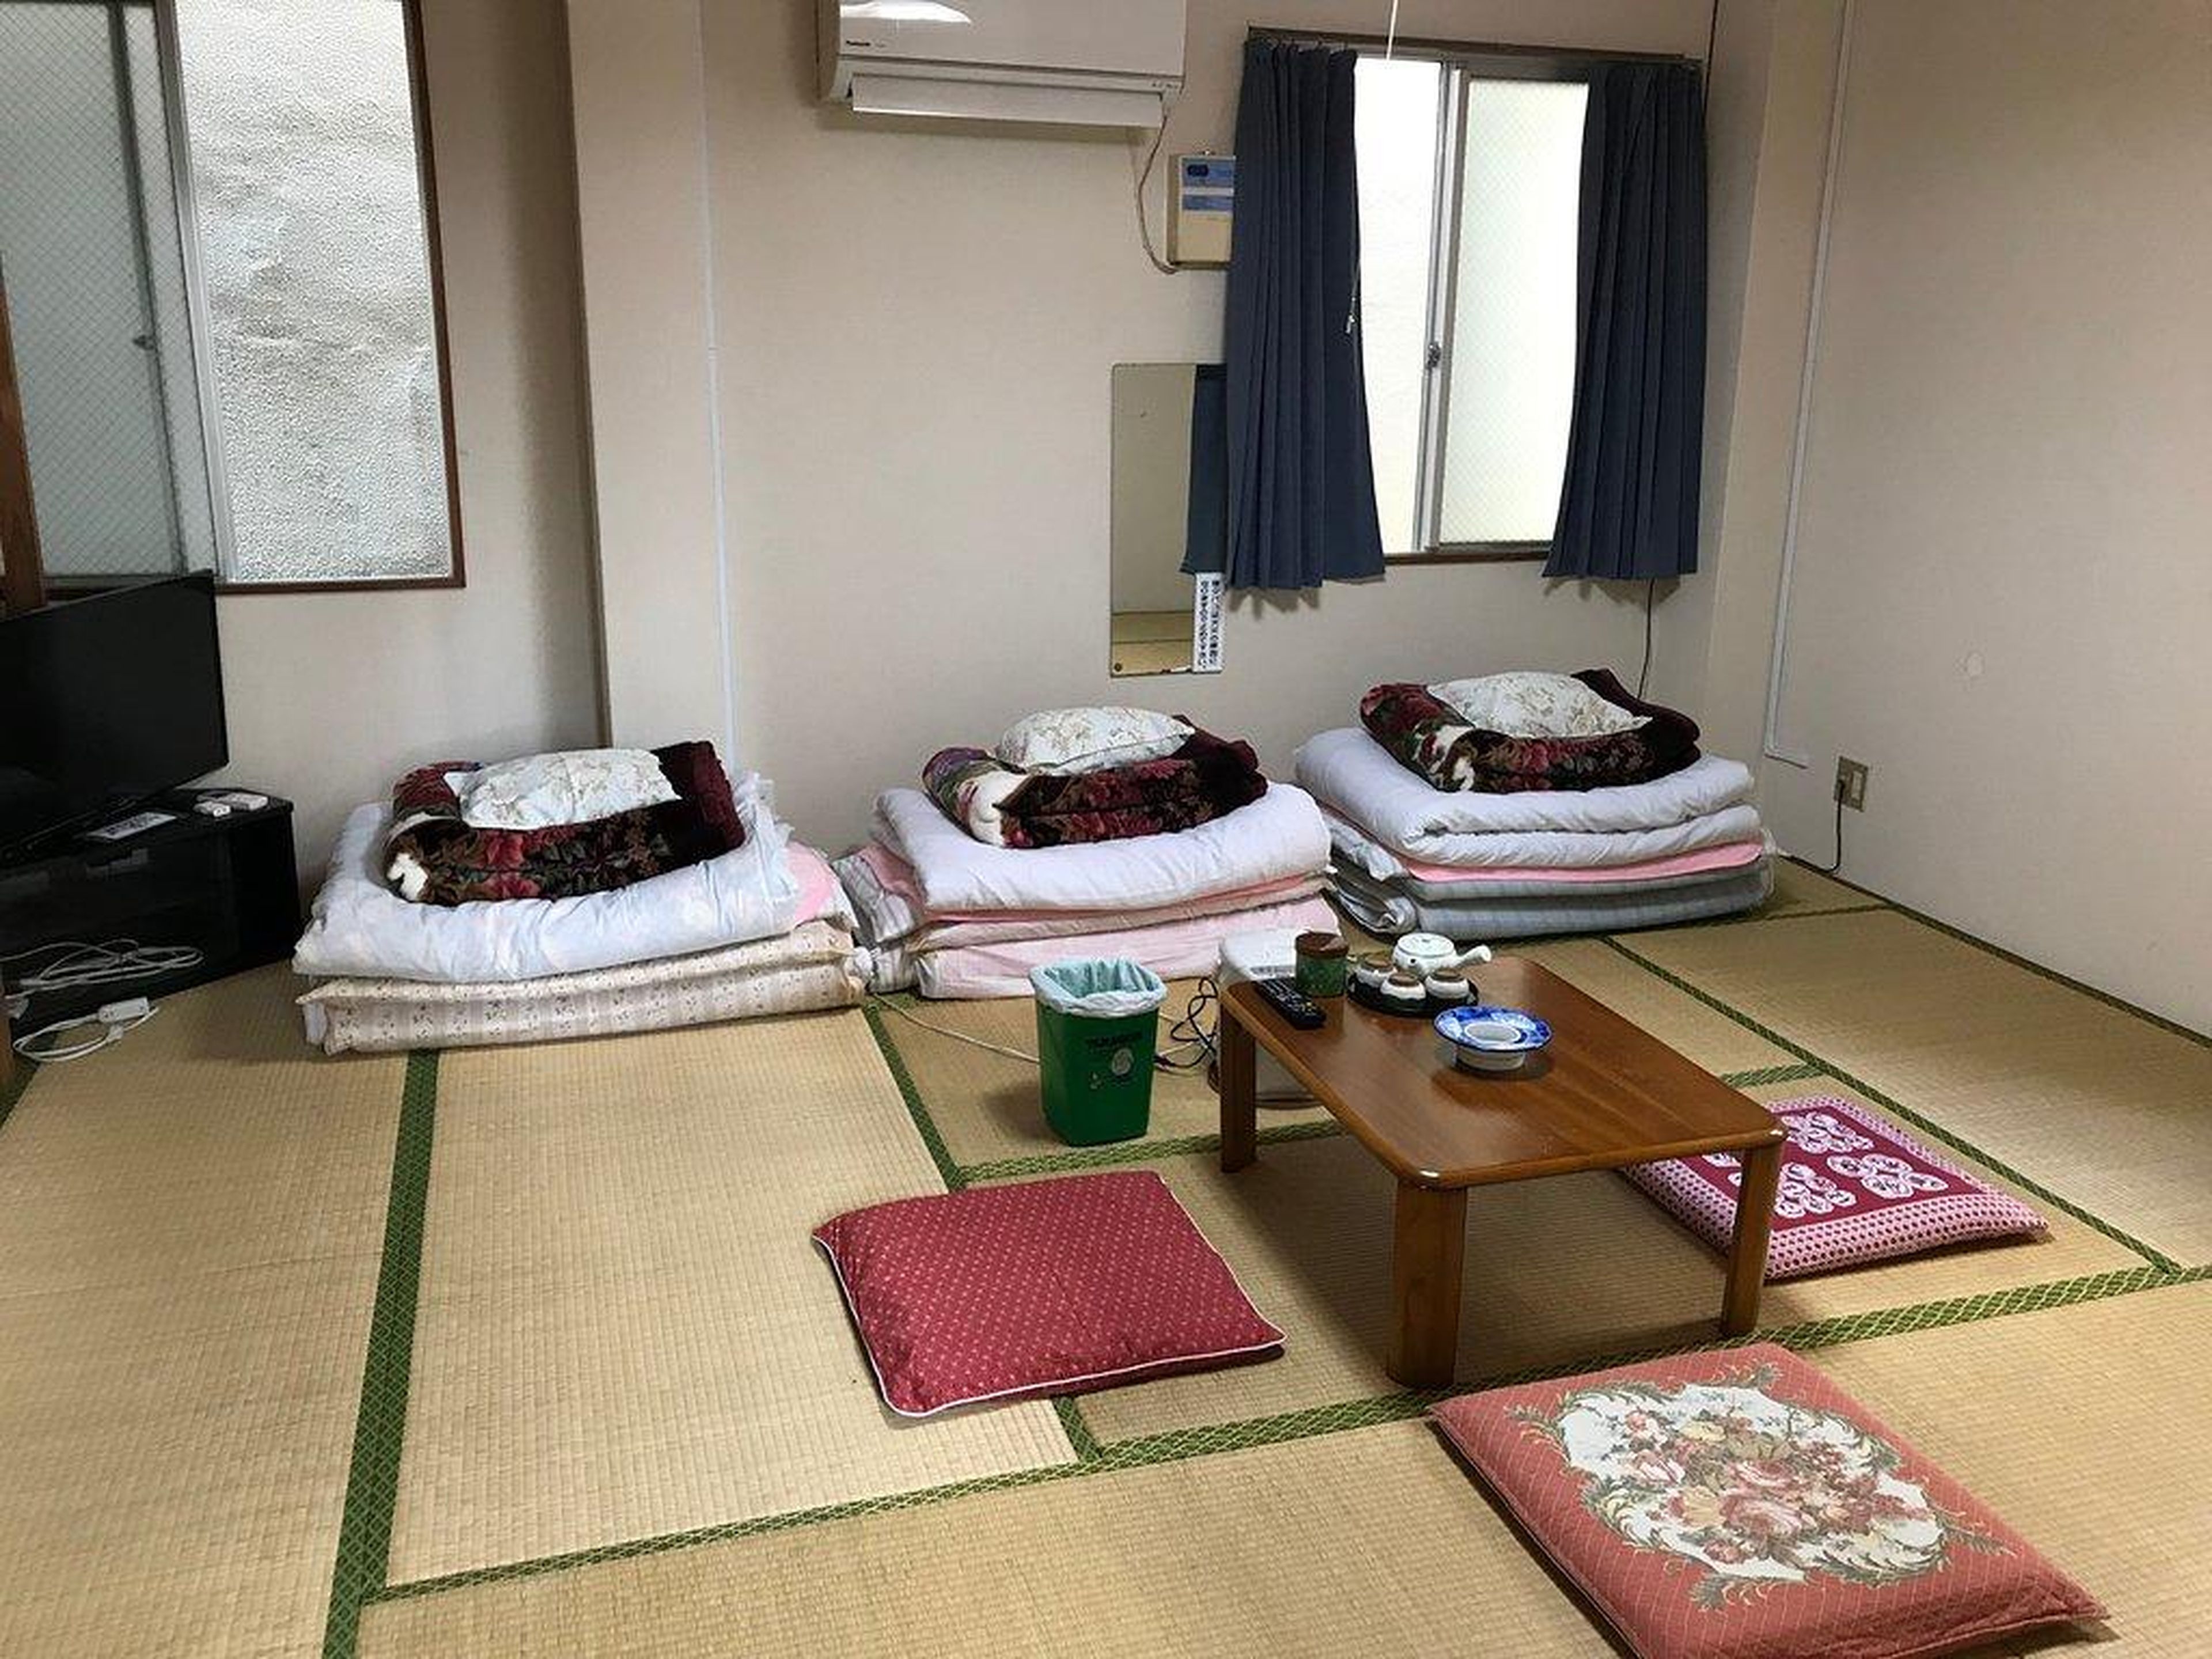 La habitación es la típica del estilo japonés ryokan.